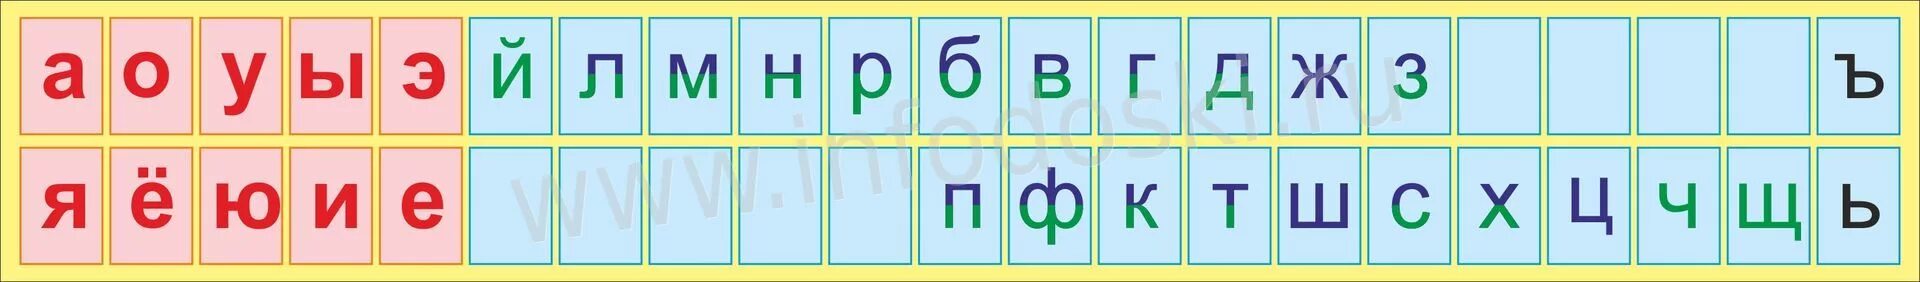 Синие какие согласные. Алфавит гласные и согласные буквы. Русский алфавит с гласными и согласными буквами. Азбука гласных и согласных букв.